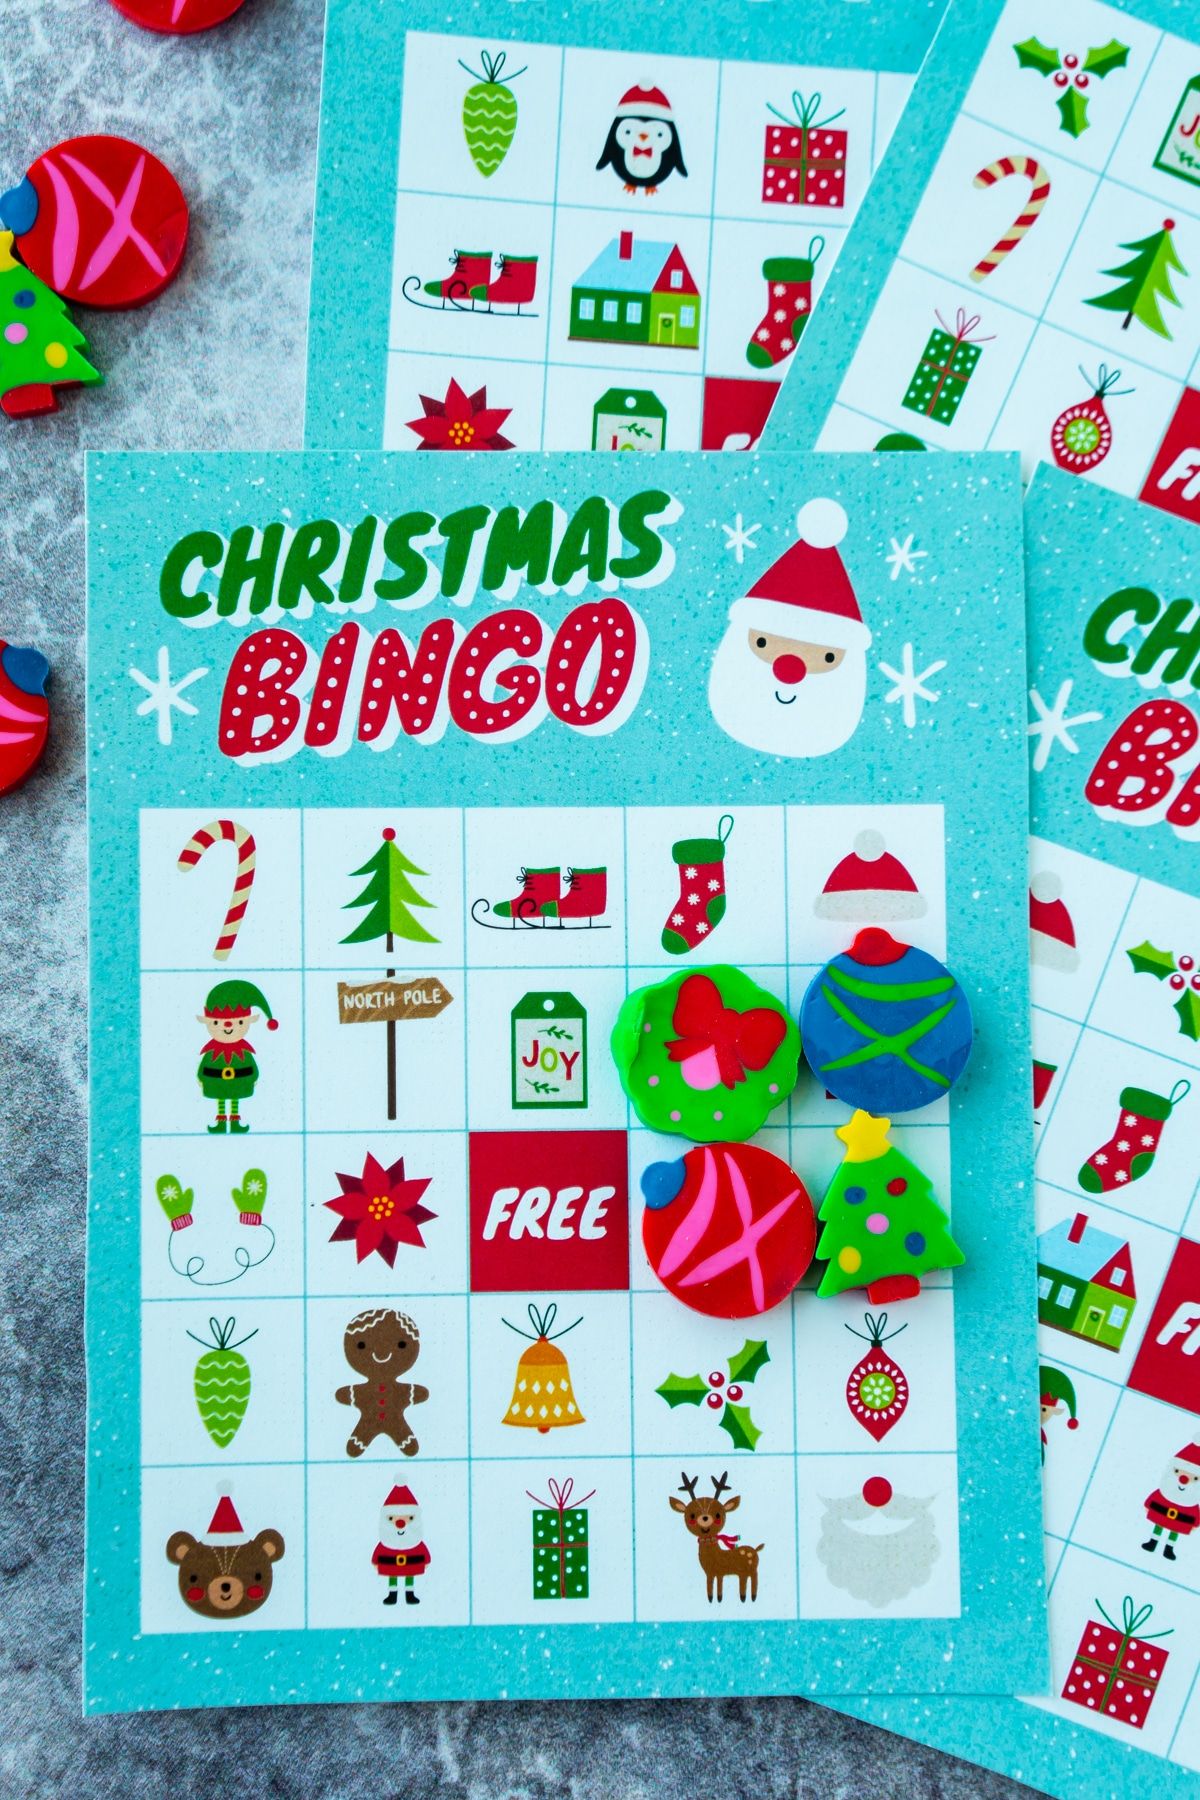 Χριστουγεννιάτικες κάρτες bingo με γόμες σε ένα τετράγωνο